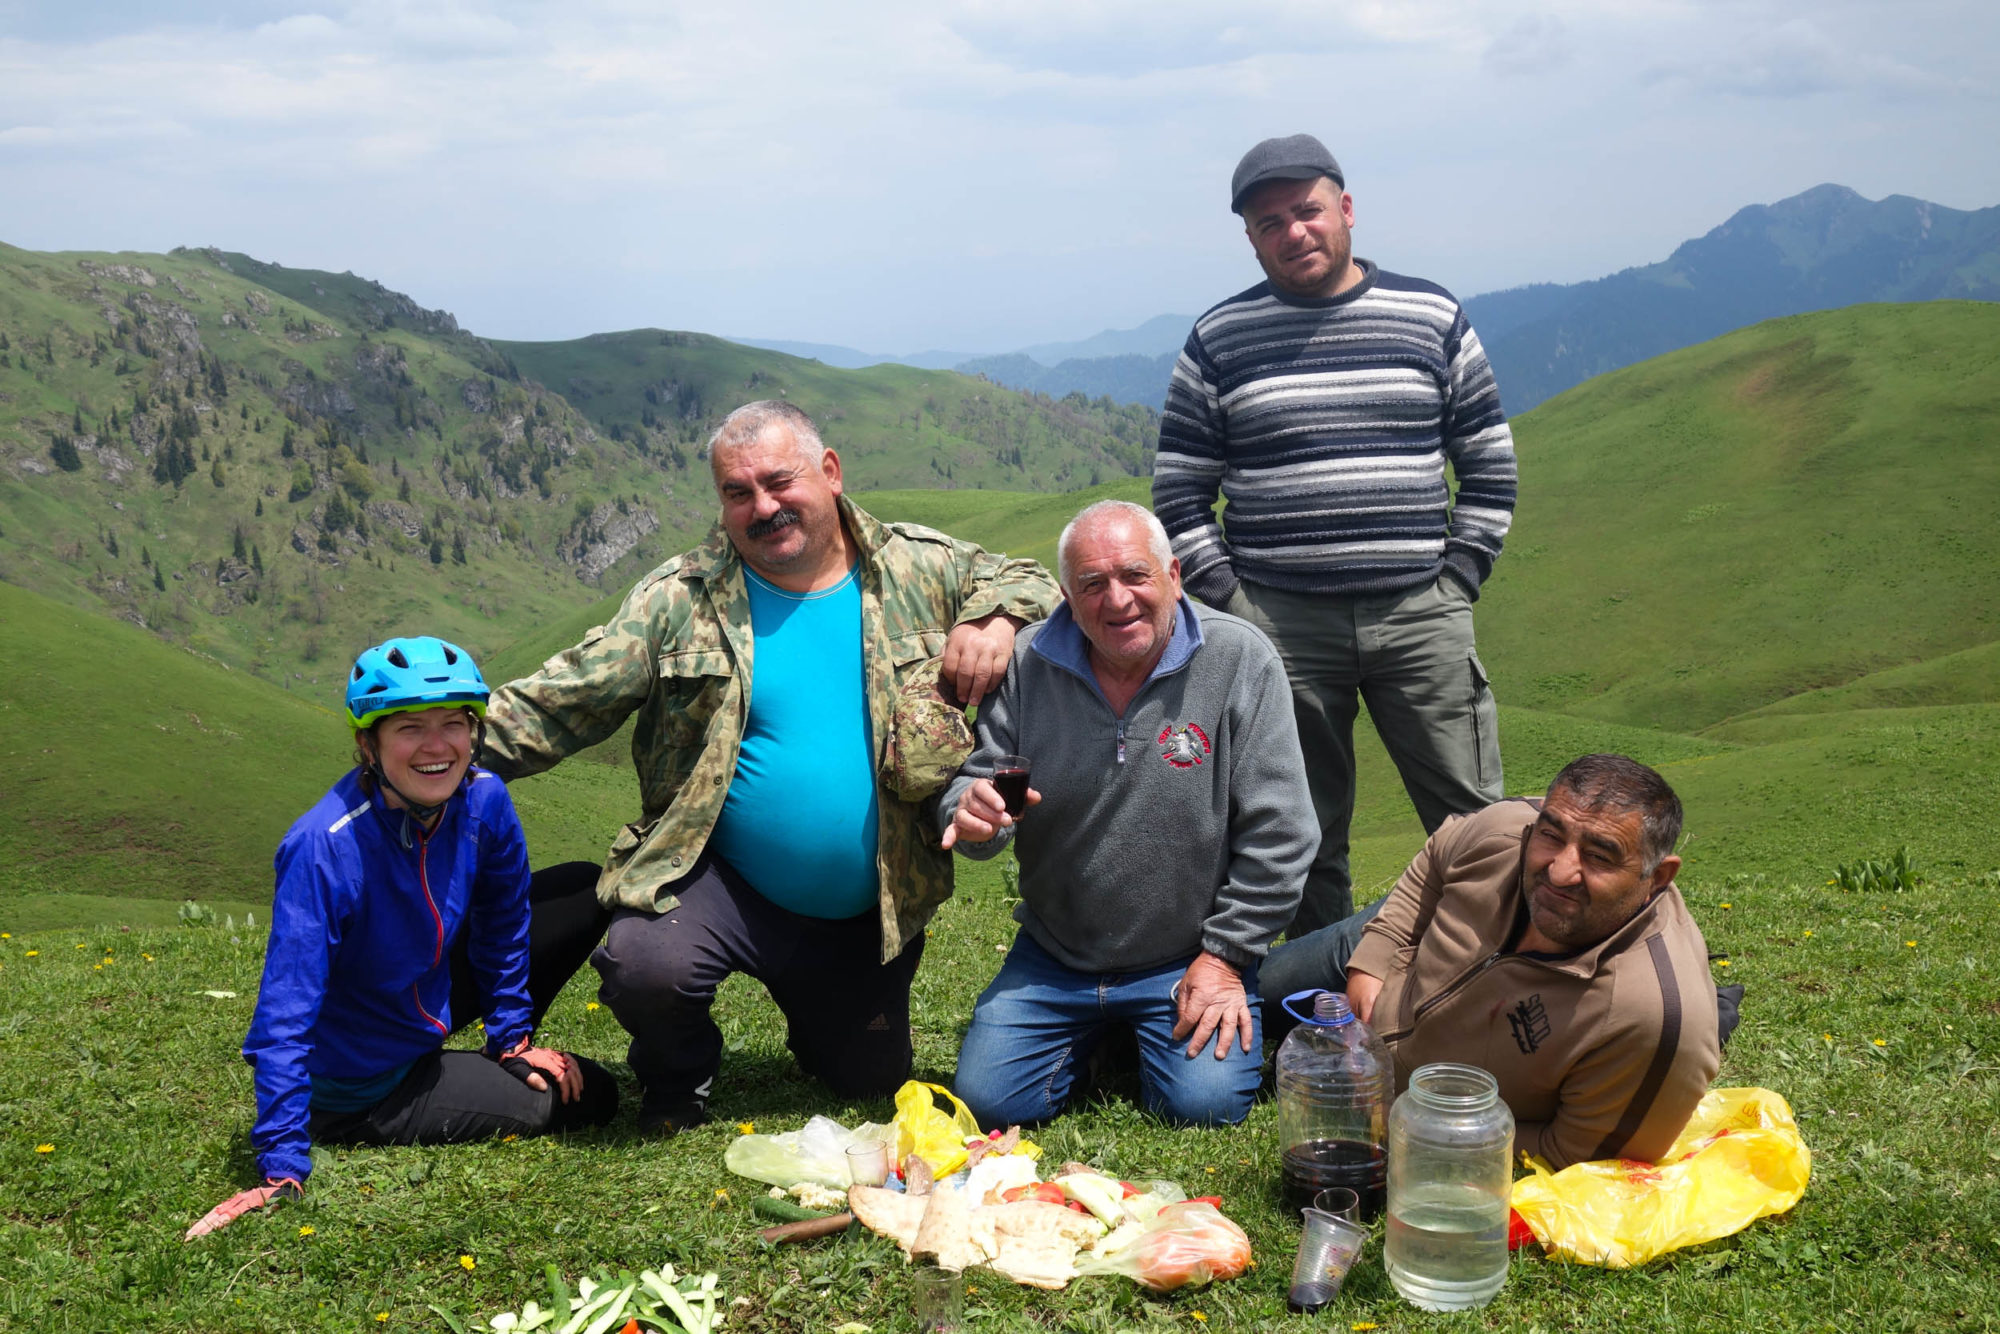 Caucasus Crossing, Georgia, Bikepacking